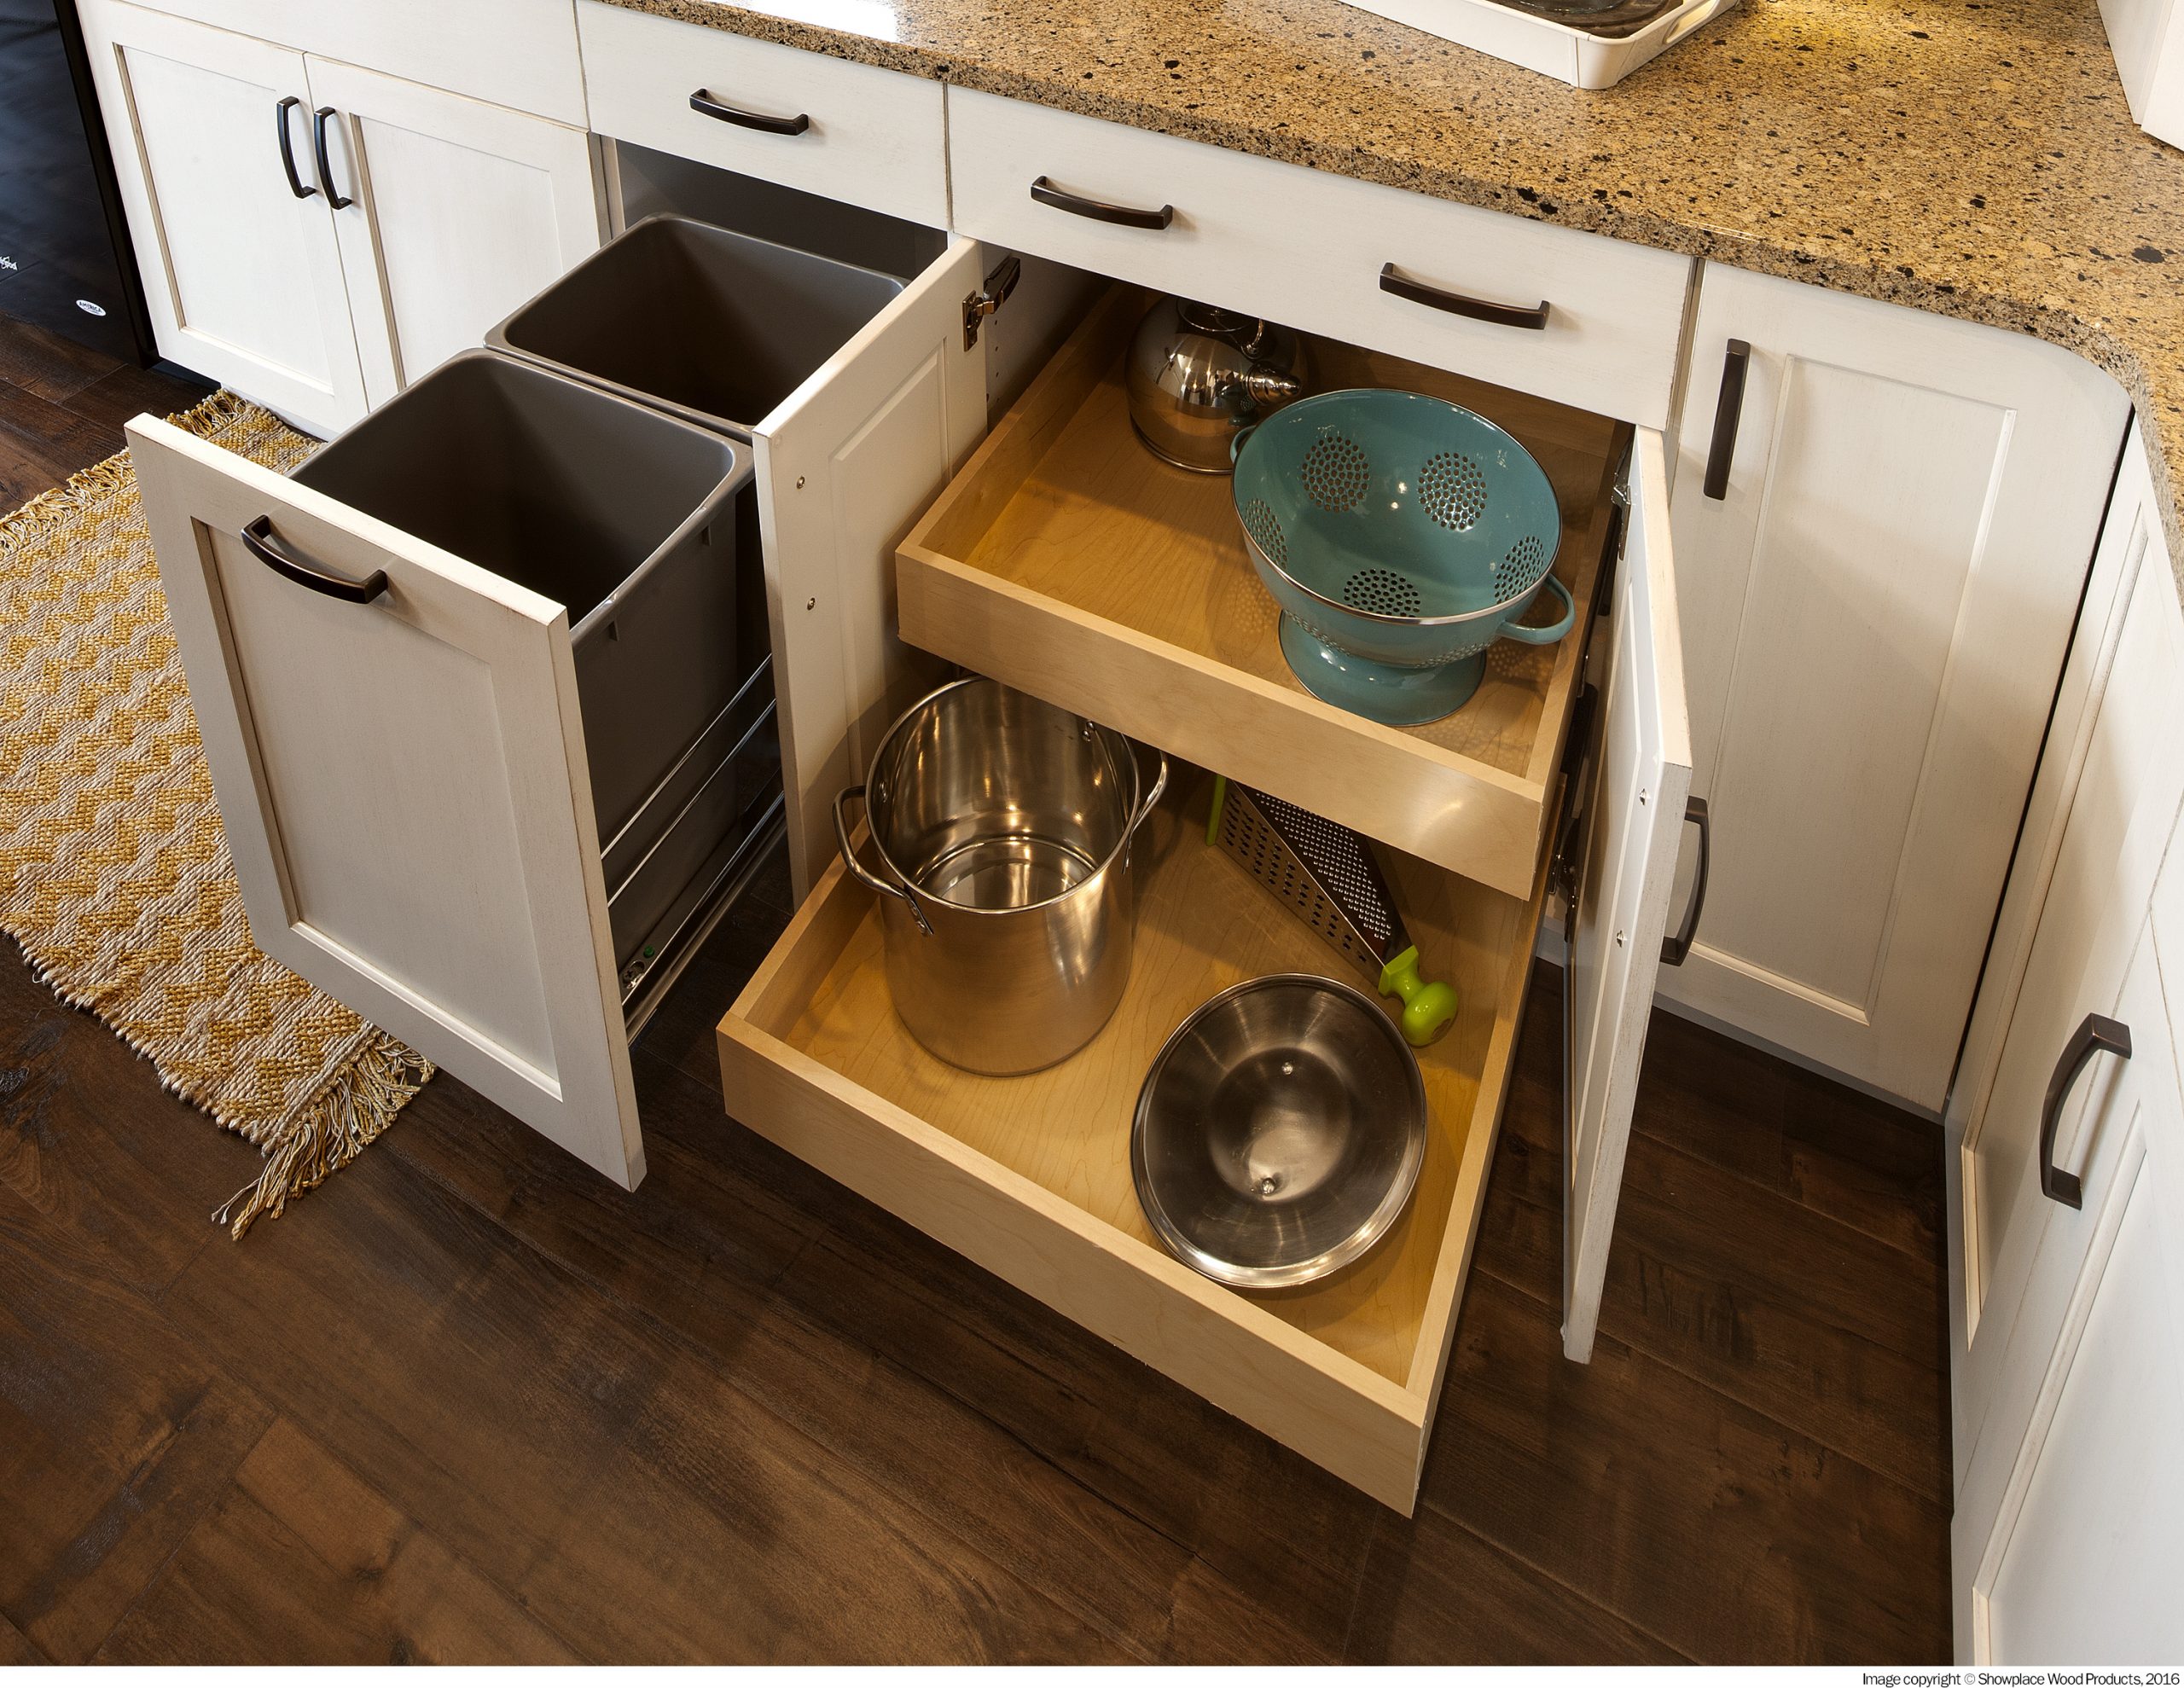 Types of kitchen storage cabinets